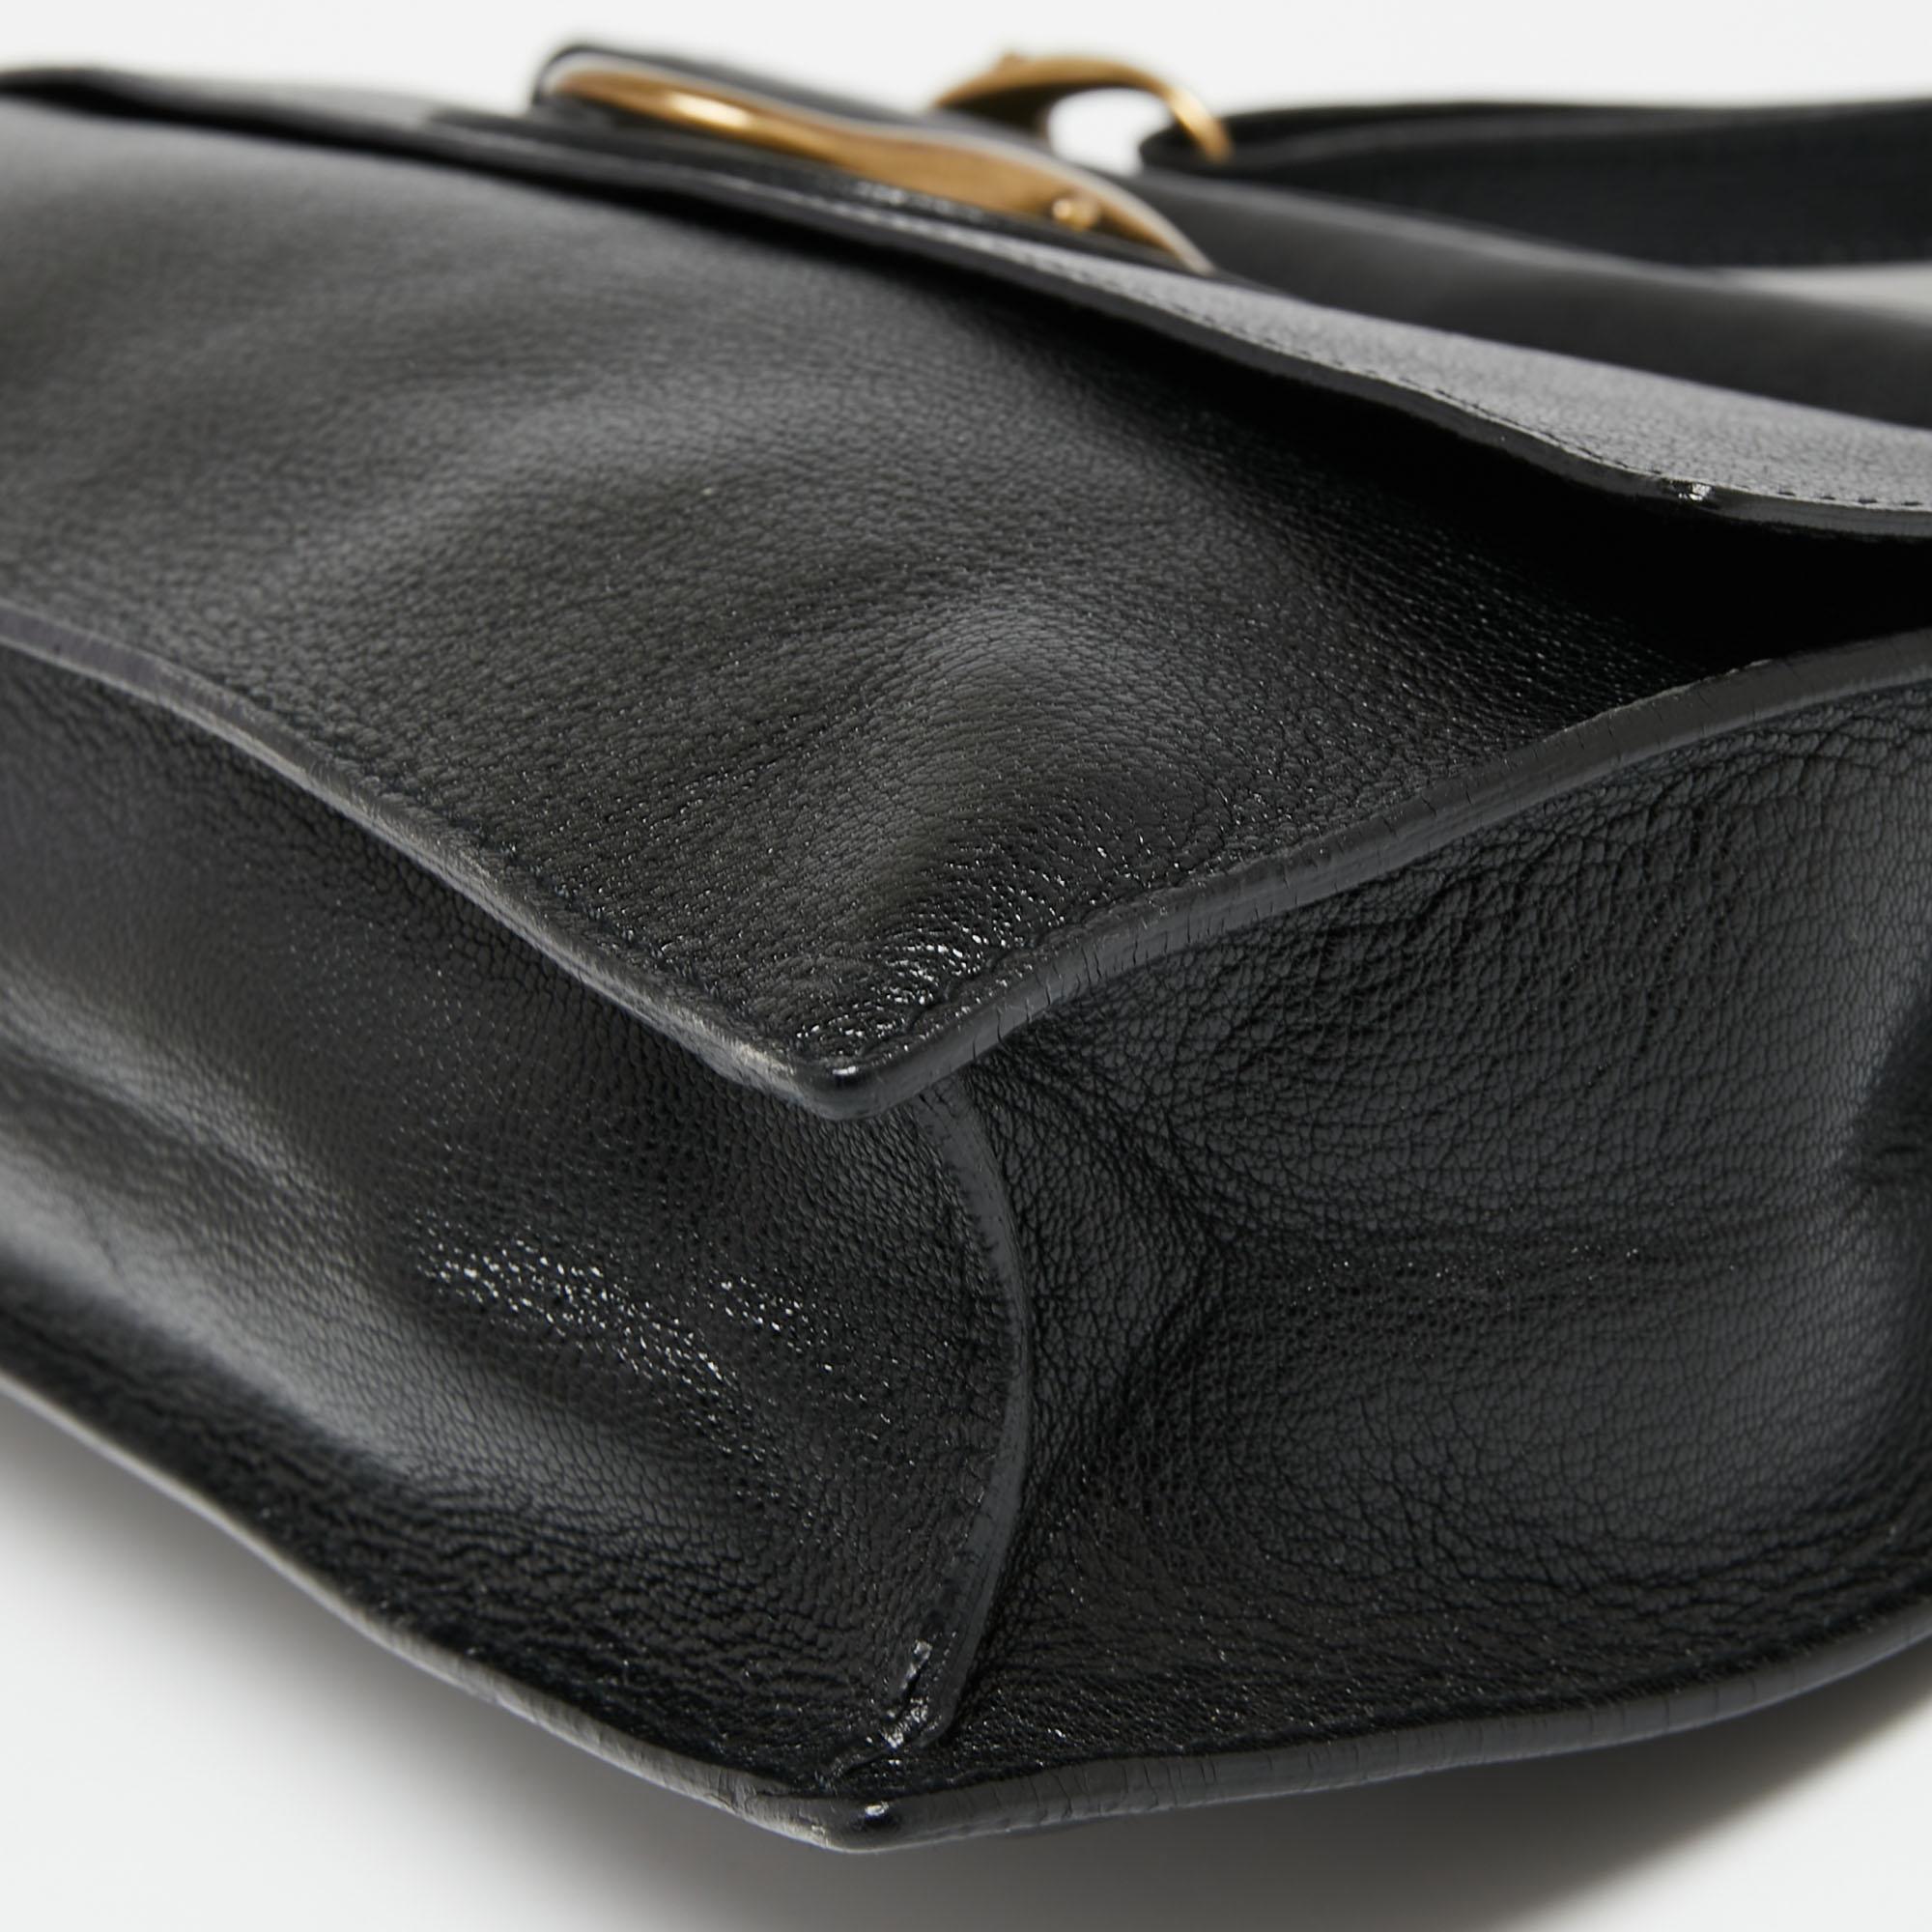 Yves Saint Laurent Black Leather Turnlock Buckle Flap Top Handle Bag 4